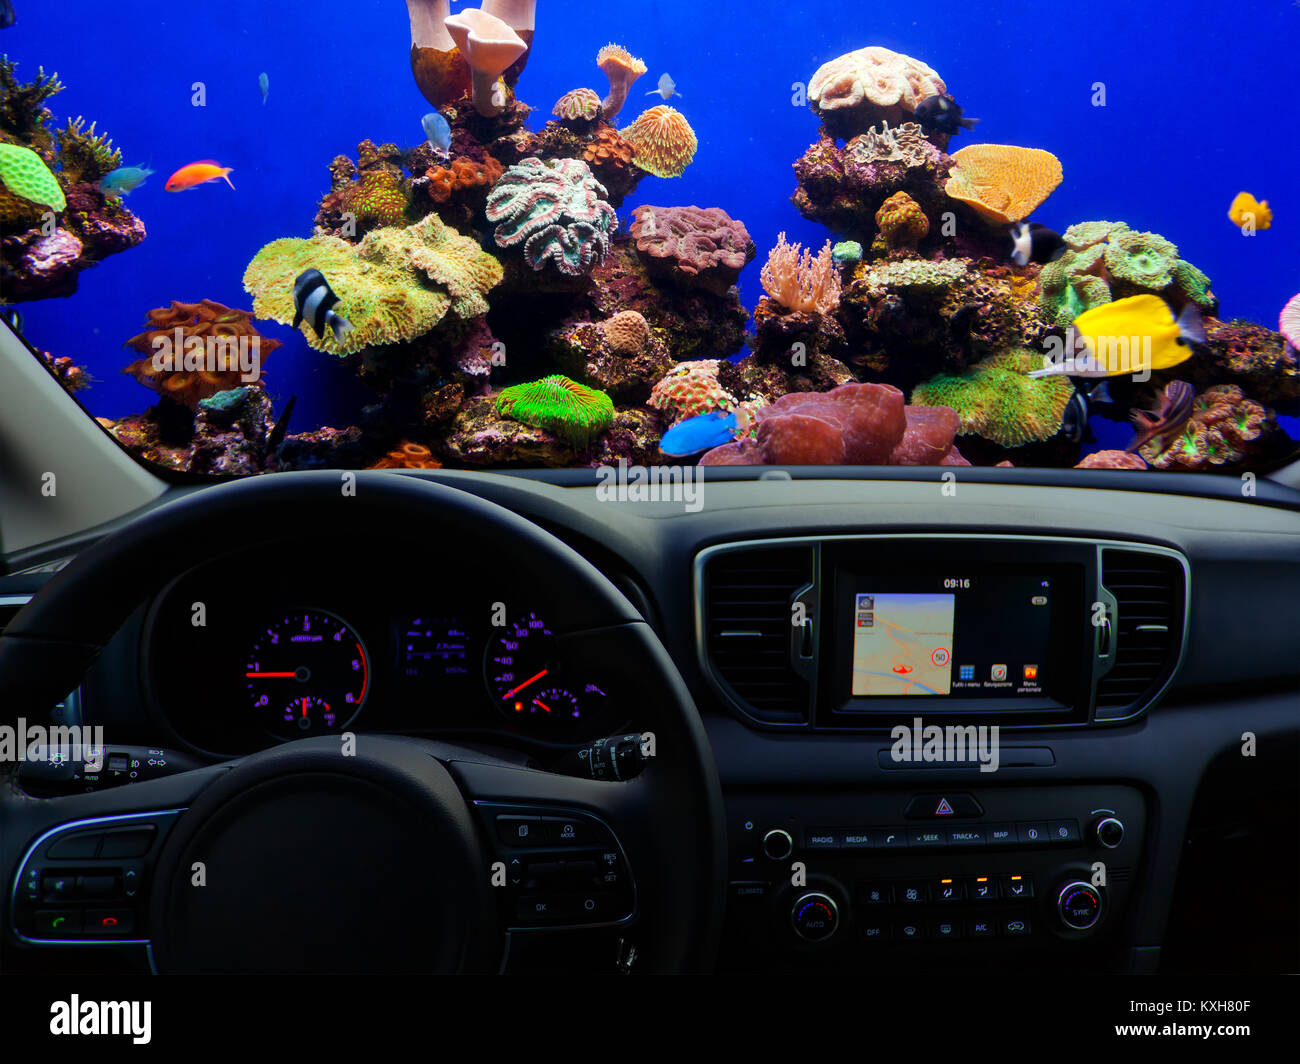 Vue d'un tableau de bord de voiture avec une unité de navigation voyageant sous l'eau. Banque D'Images